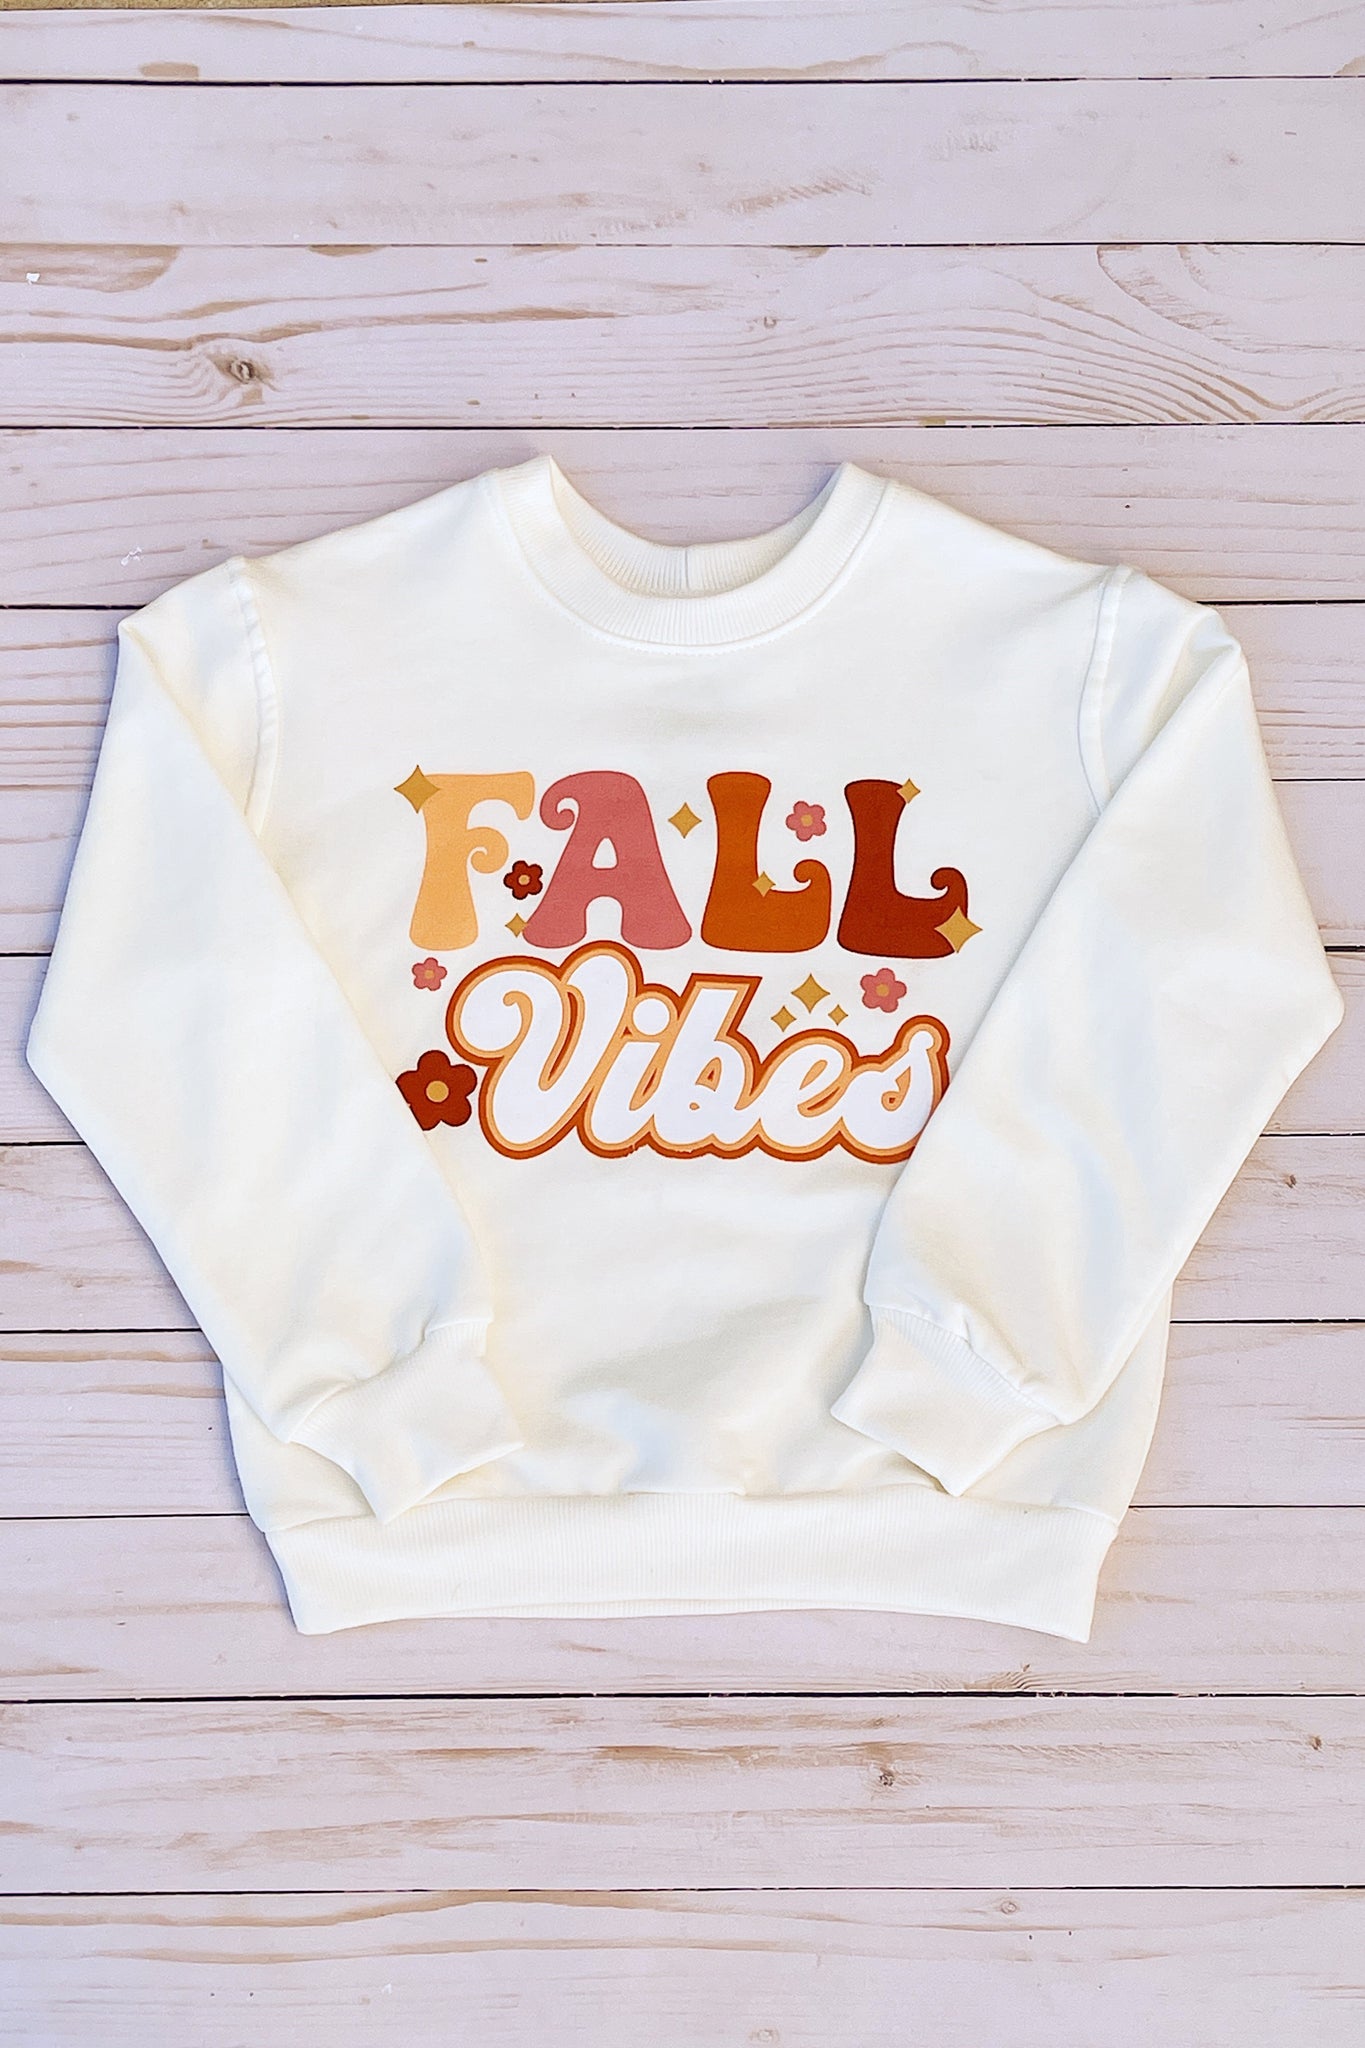 Fall Vibes Premium Graphic Sweatshirt